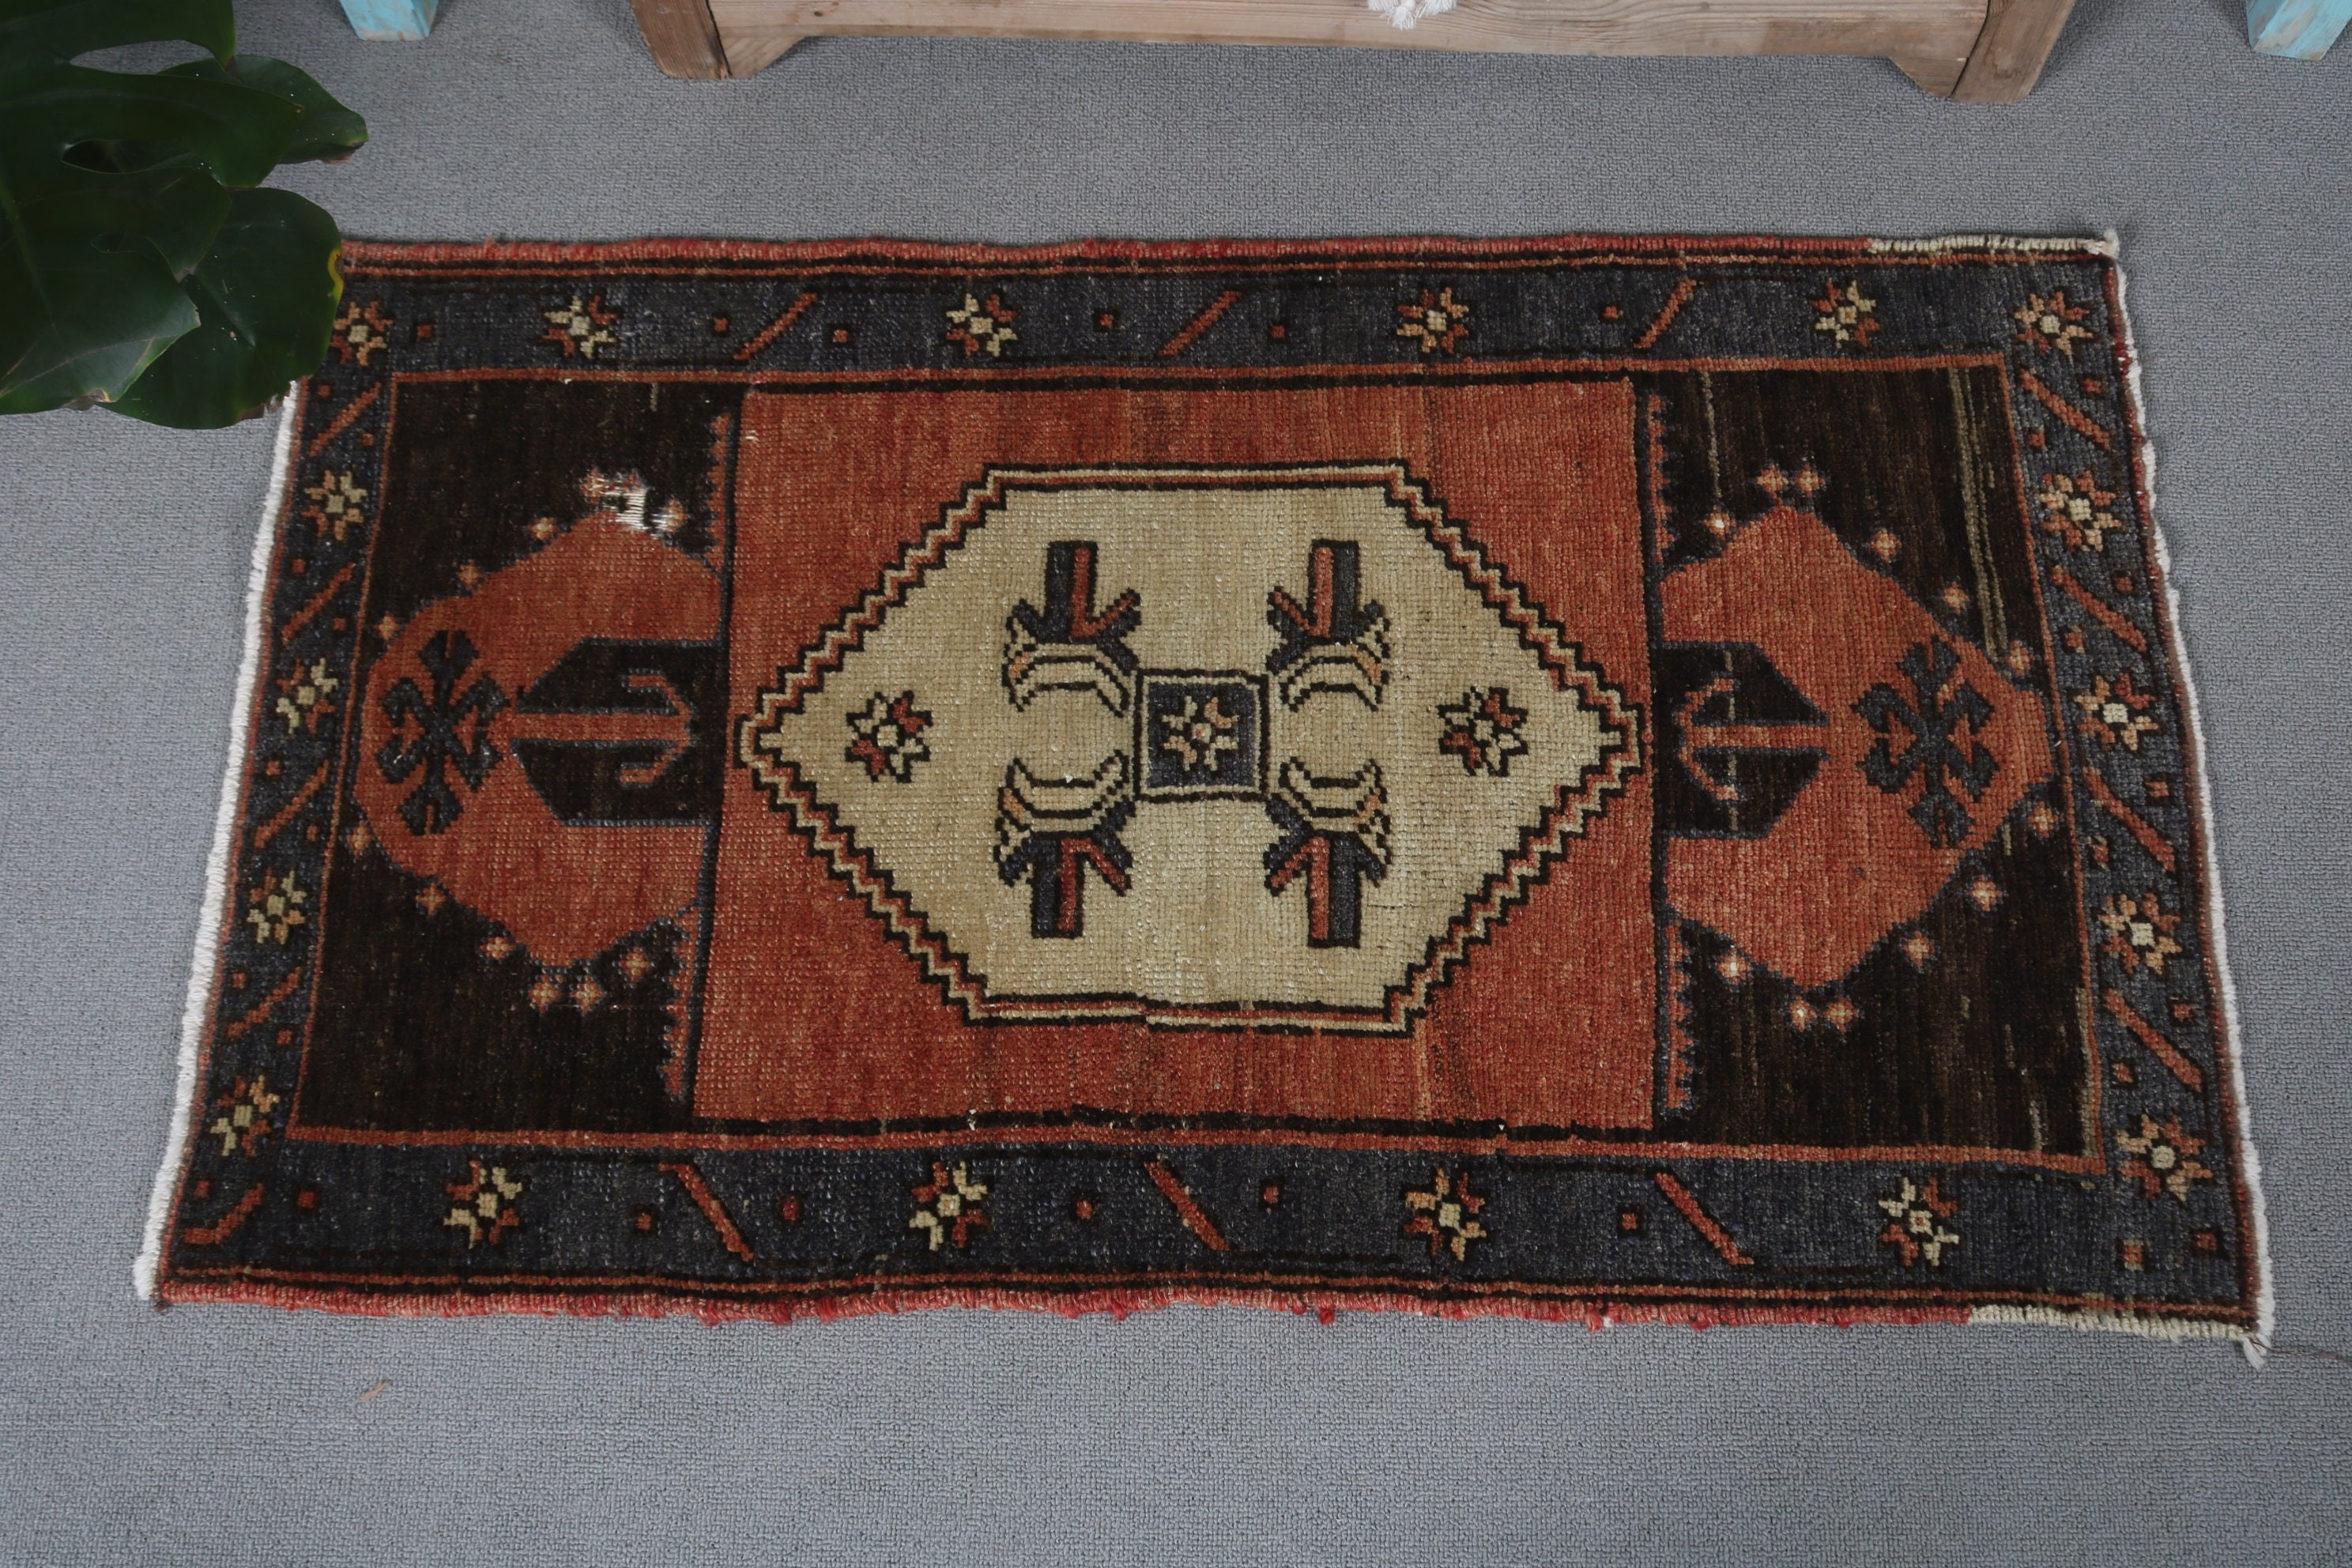 Turkish Rug, Vintage Rug, Wool Rugs, Floor Rugs, Retro Rugs, 1.9x3.3 ft Small Rug, Brown Anatolian Rug, Wall Hanging Rug, Nursery Rugs